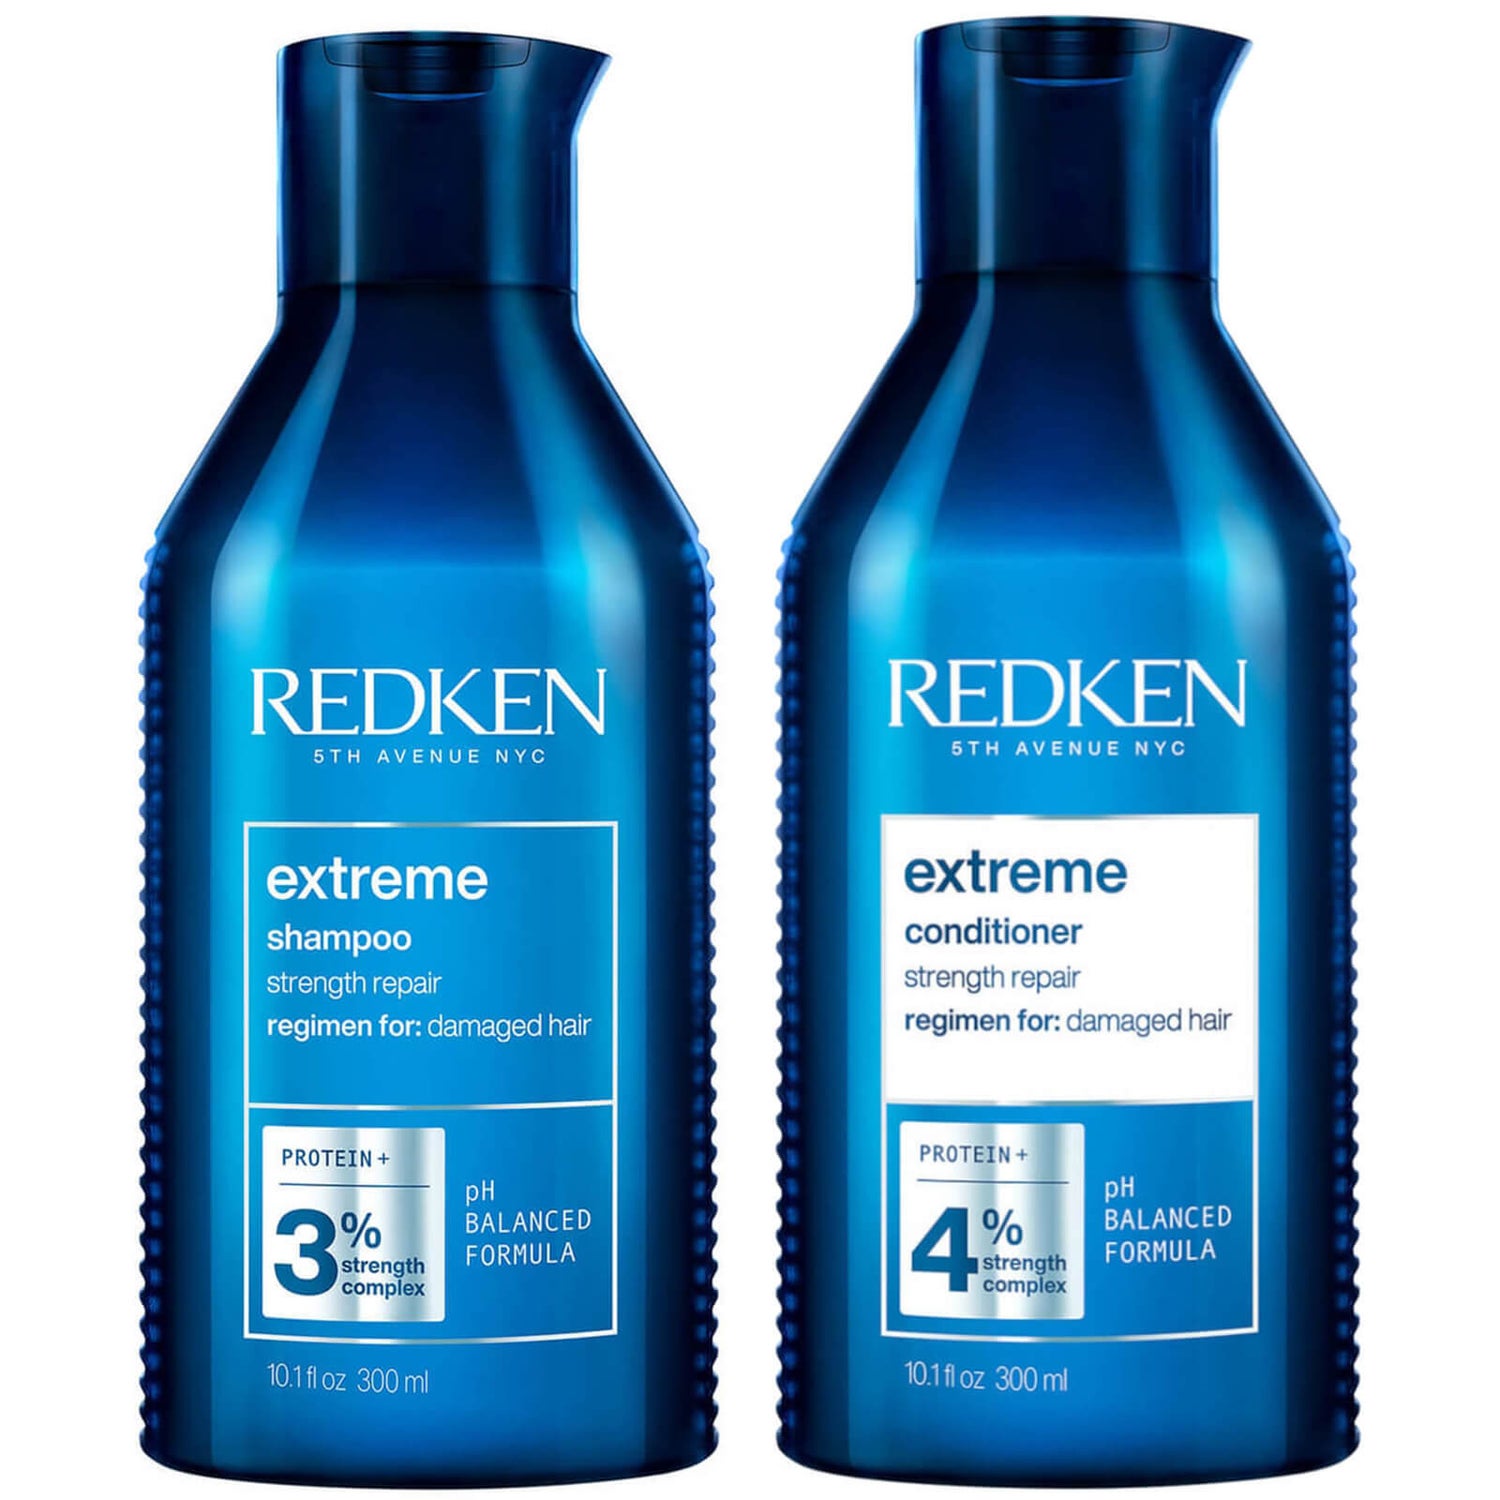 Extreme Duo de Redken (2 produits)